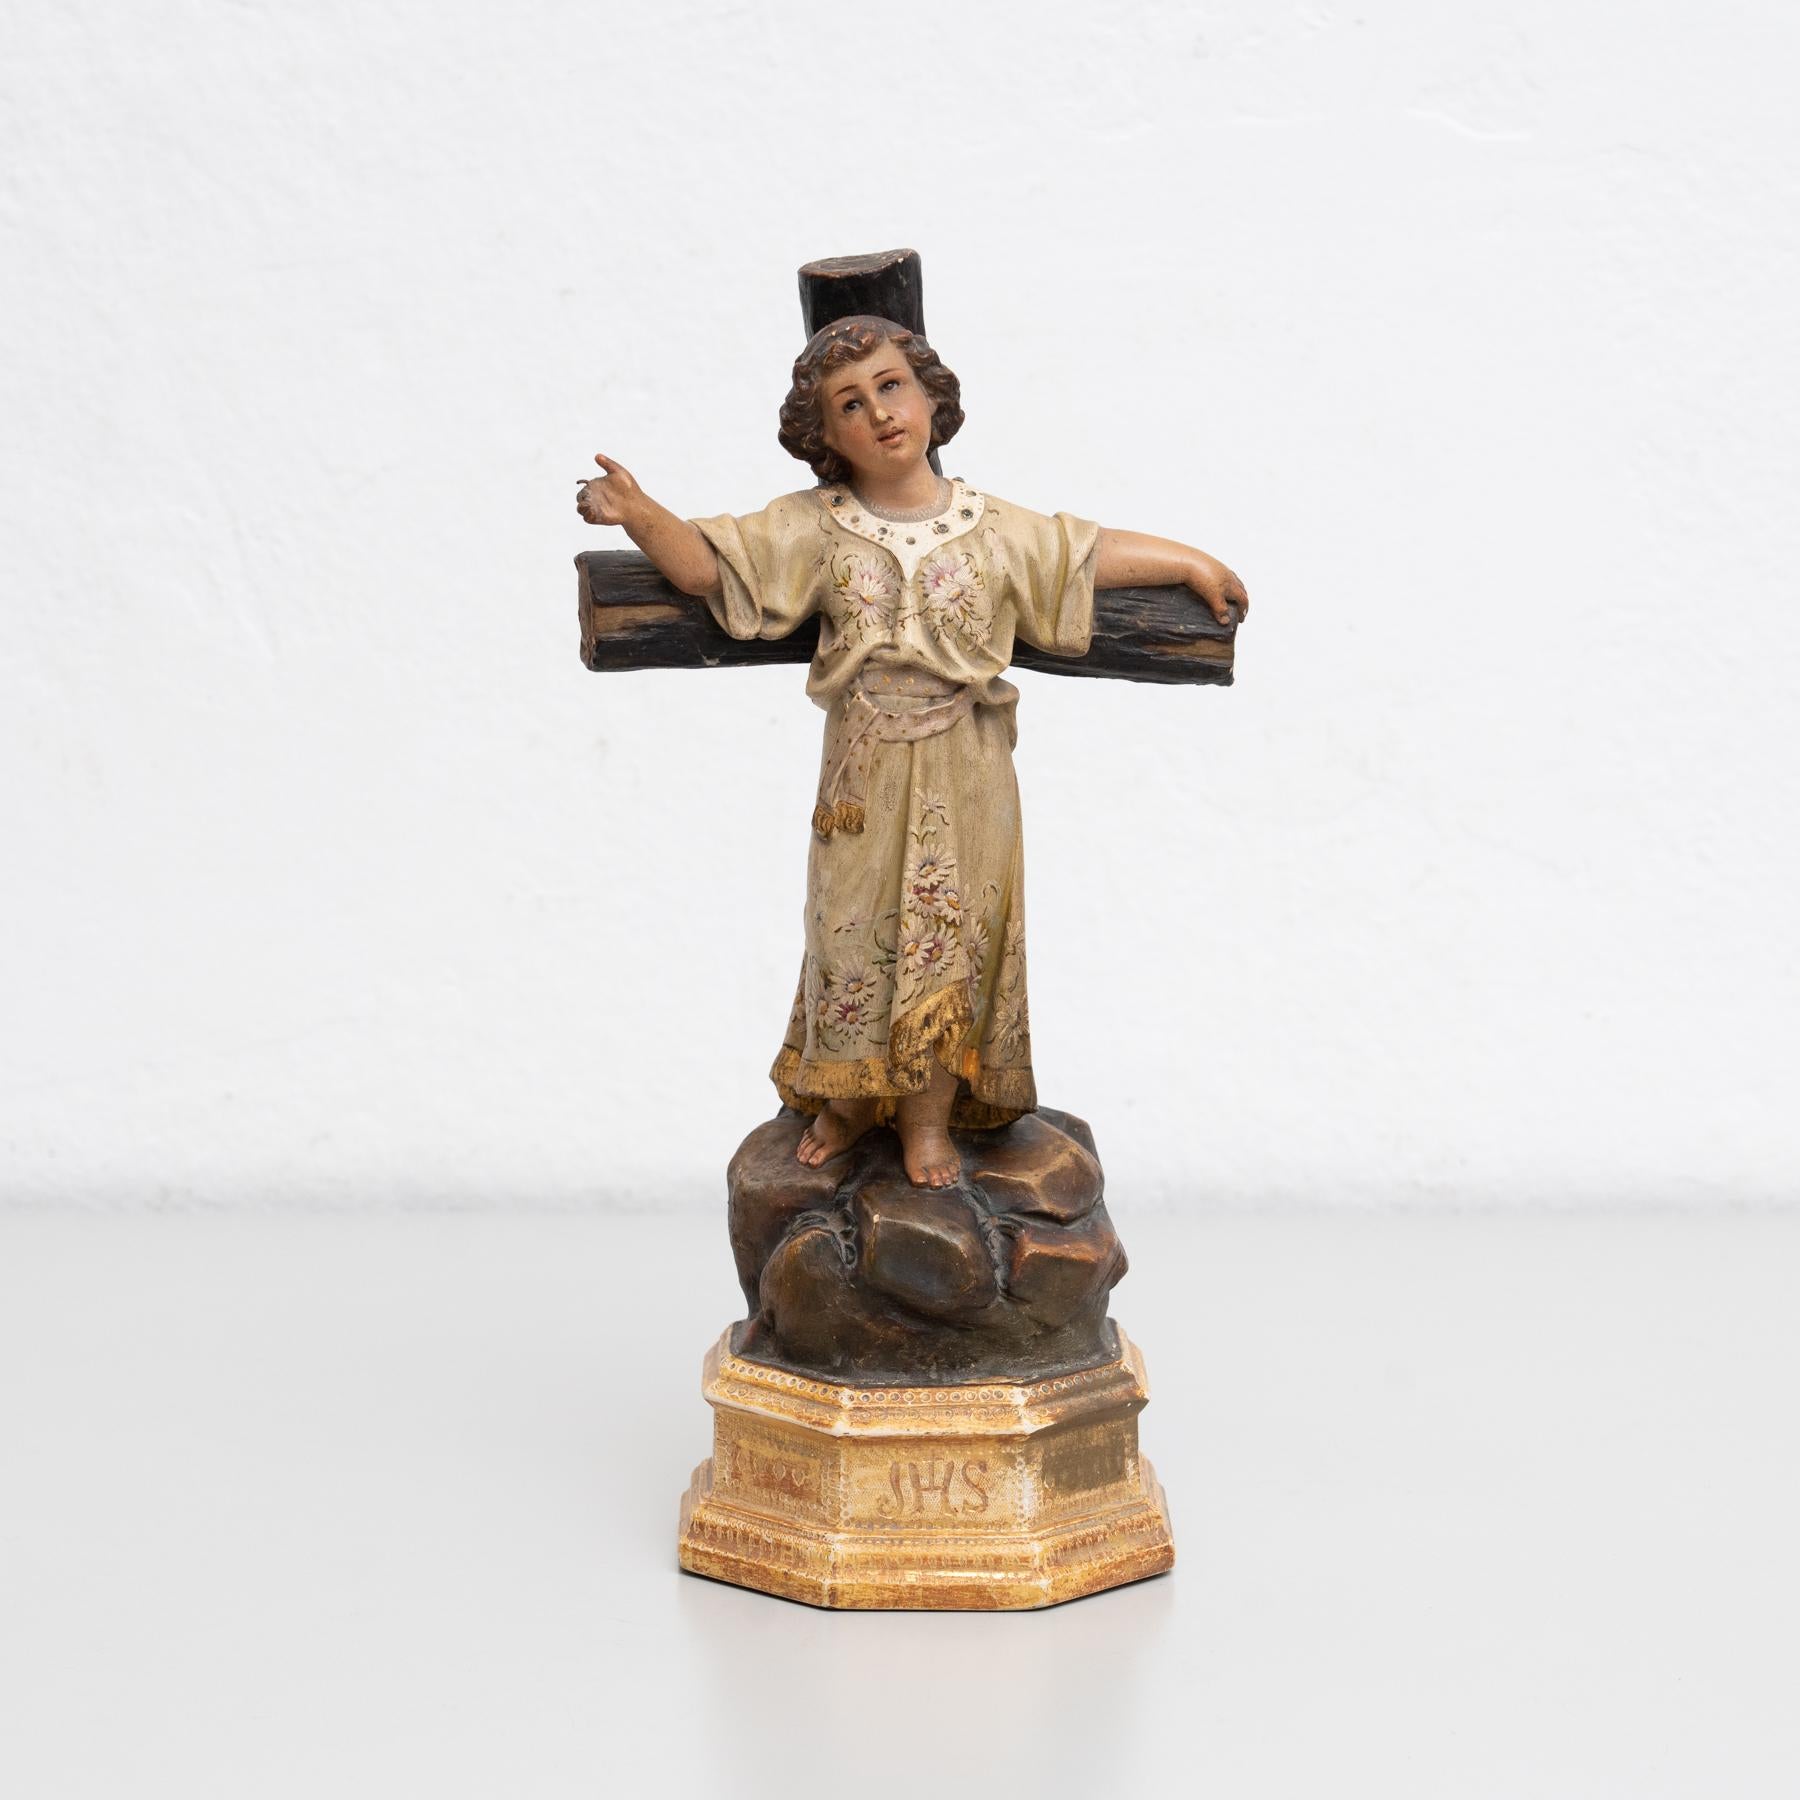 Traditionelle religiöse Gipsfigur eines Jesuskindes.

Hergestellt in einem traditionellen katalanischen Atelier in Olot, Spanien, um 1930.

Originaler Zustand mit geringen alters- und gebrauchsbedingten Abnutzungserscheinungen, der eine schöne